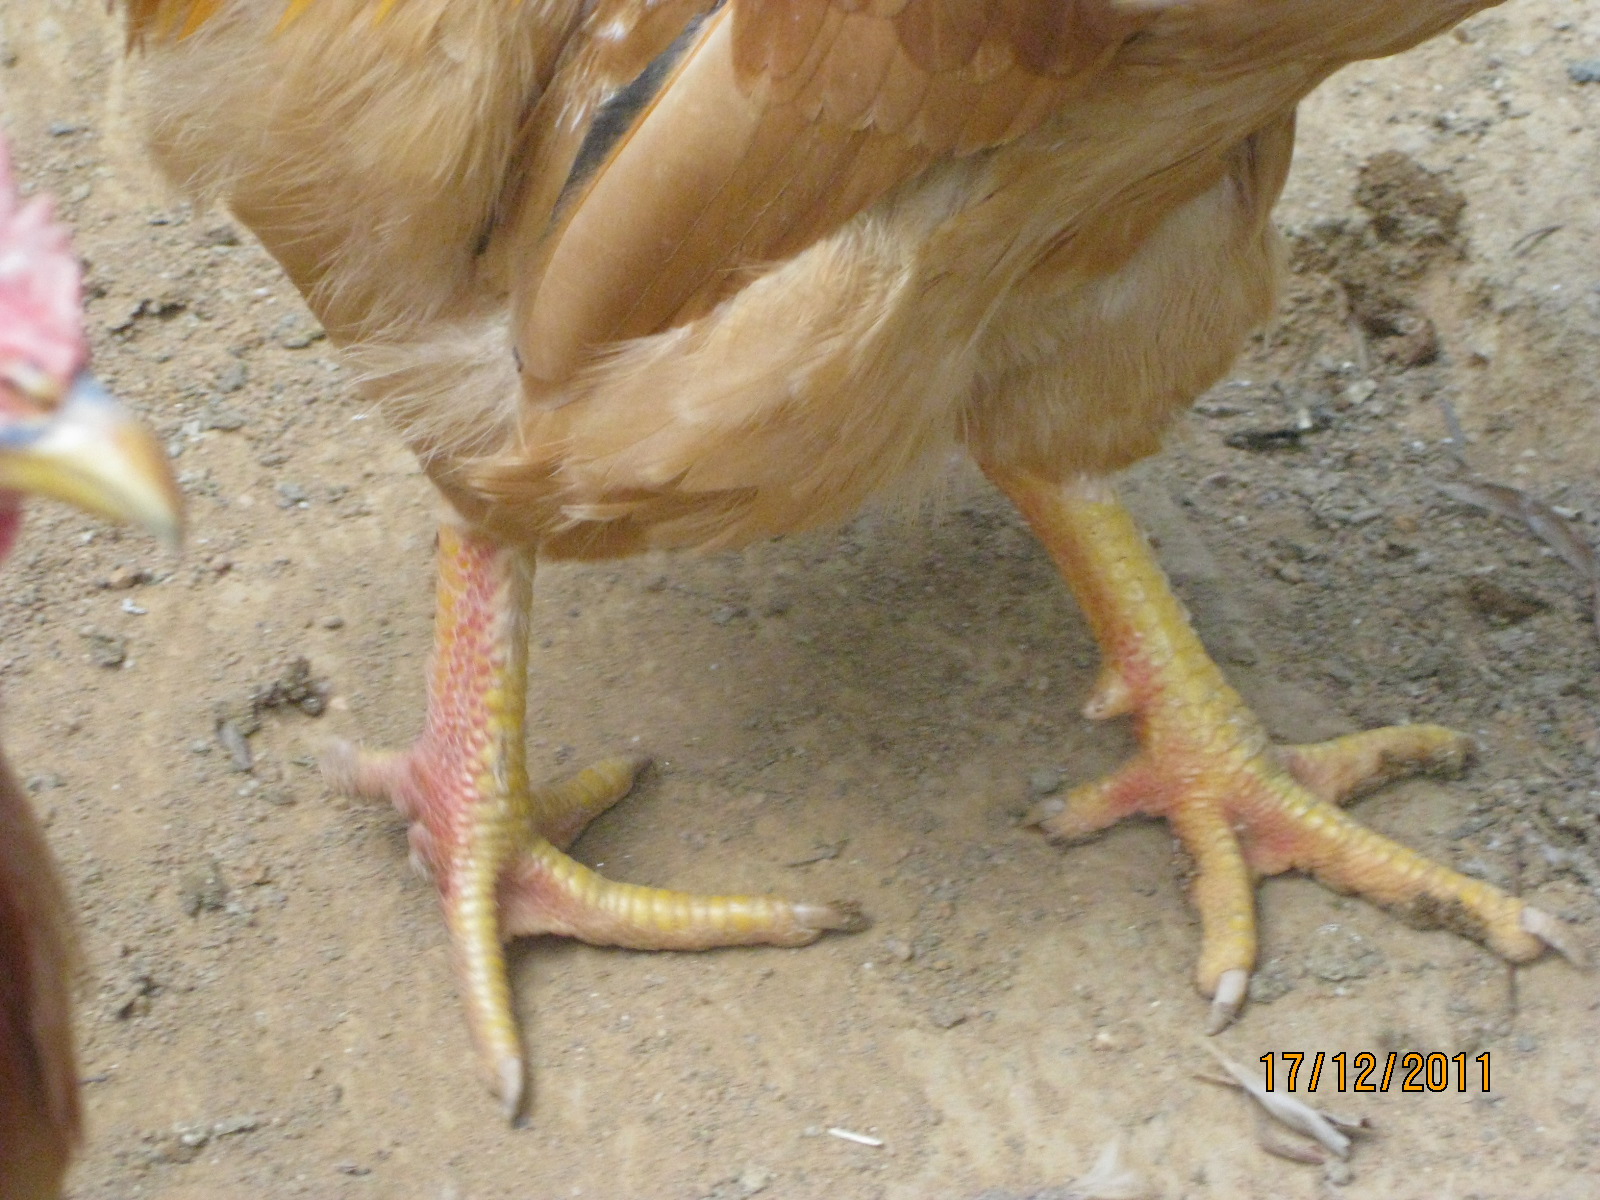 我的公鸡的脚是红的,正常吗?